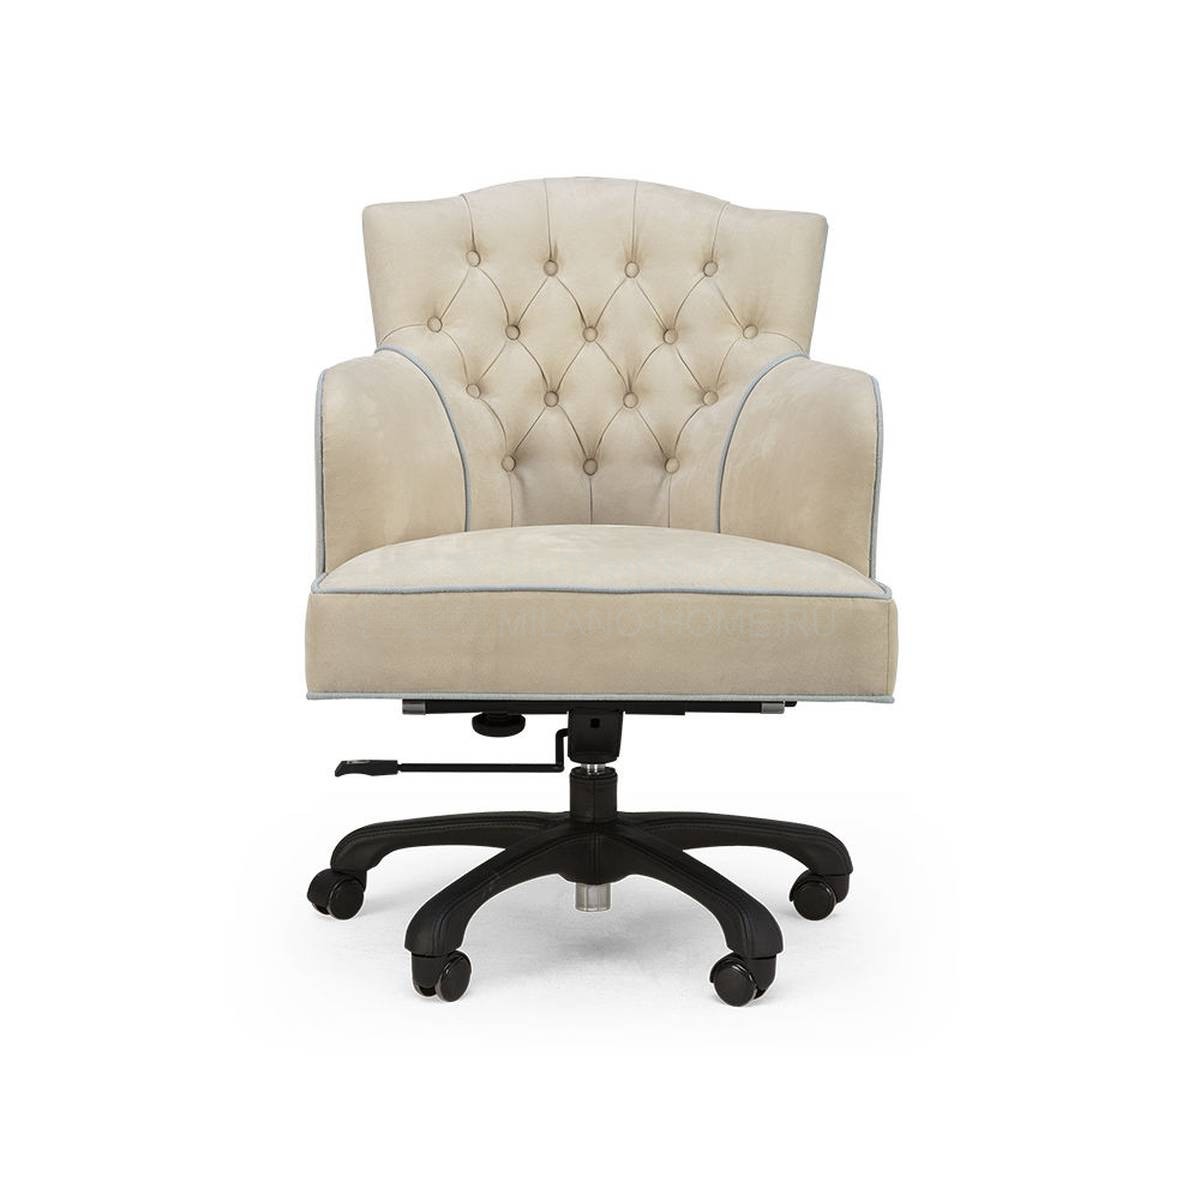 Кожаное кресло Monaco armchair  из США фабрики CHRISTOPHER GUY